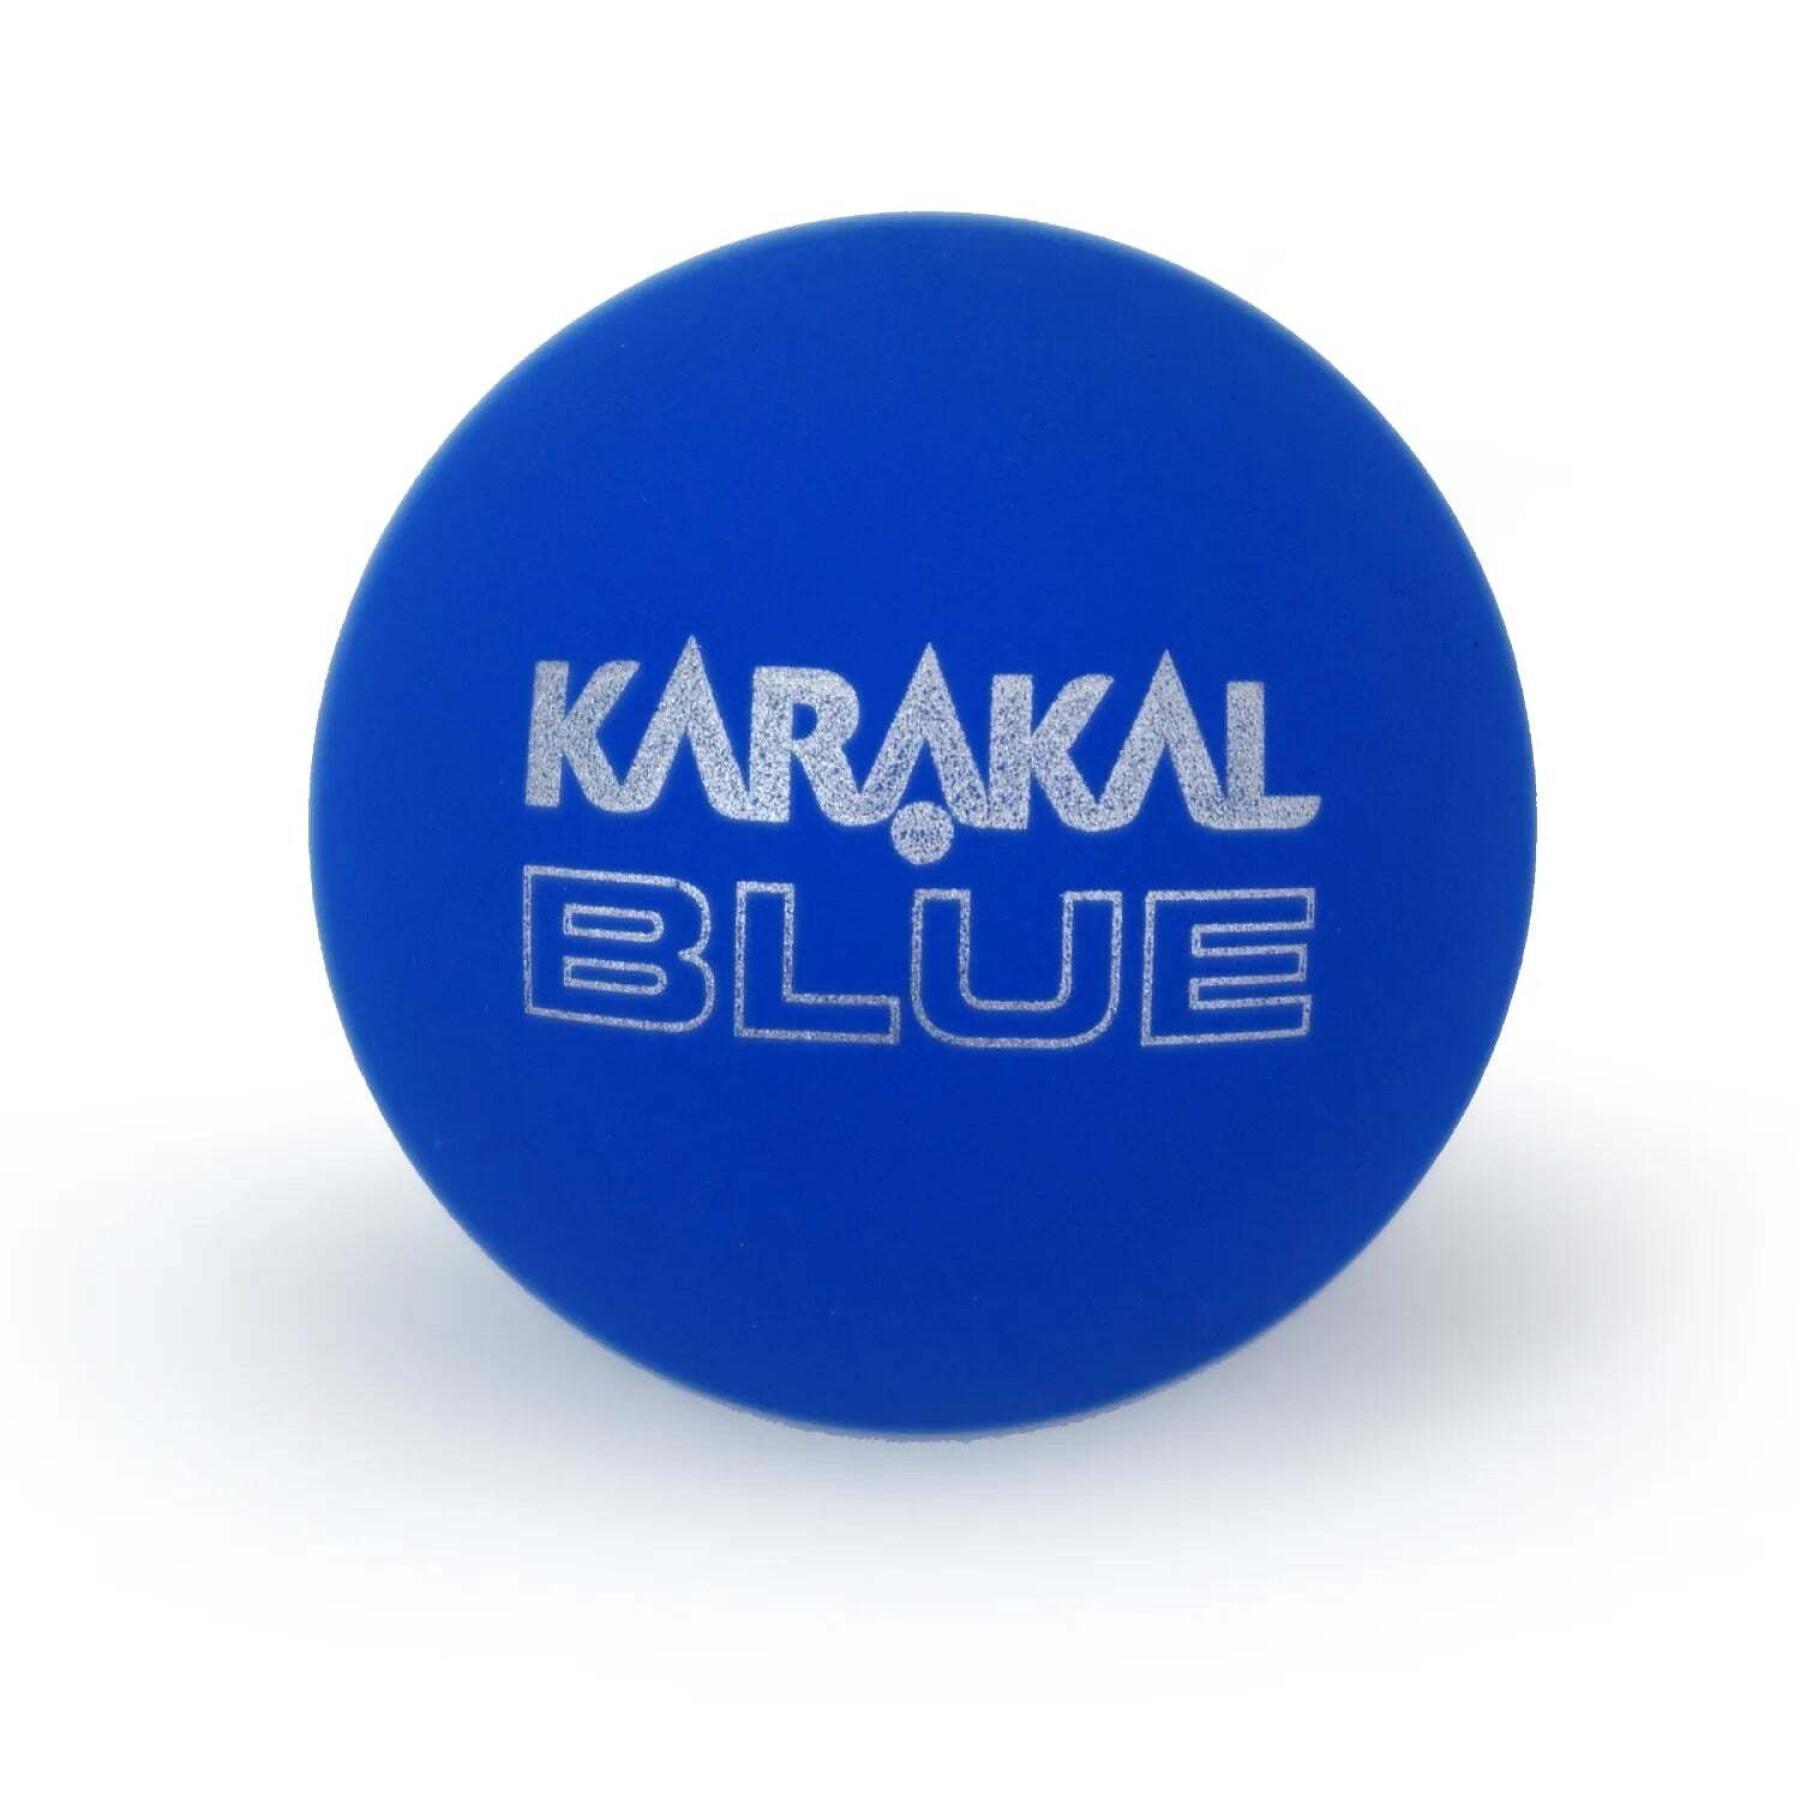 Juego de 2 pelotas de squash Karakal